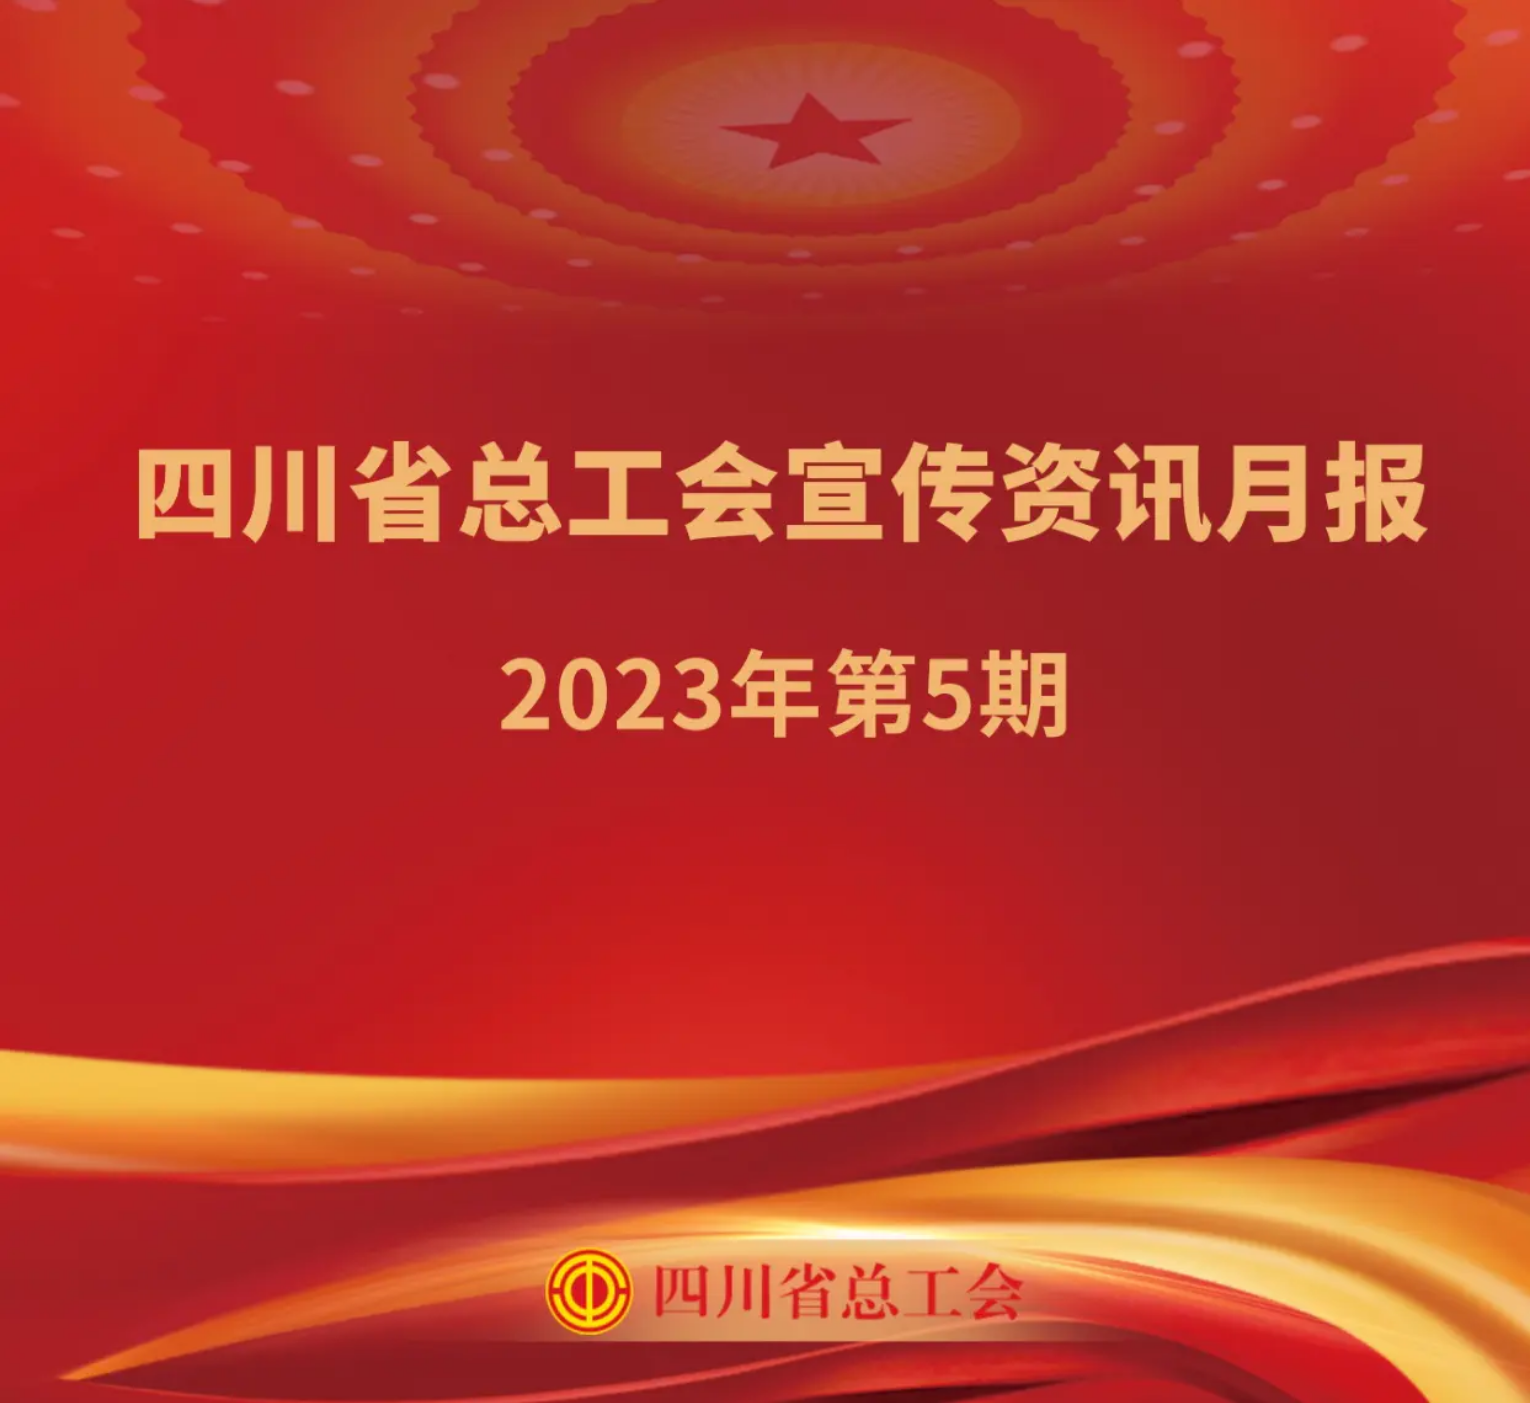 四川省总工会宣传资讯月报2023年第5期